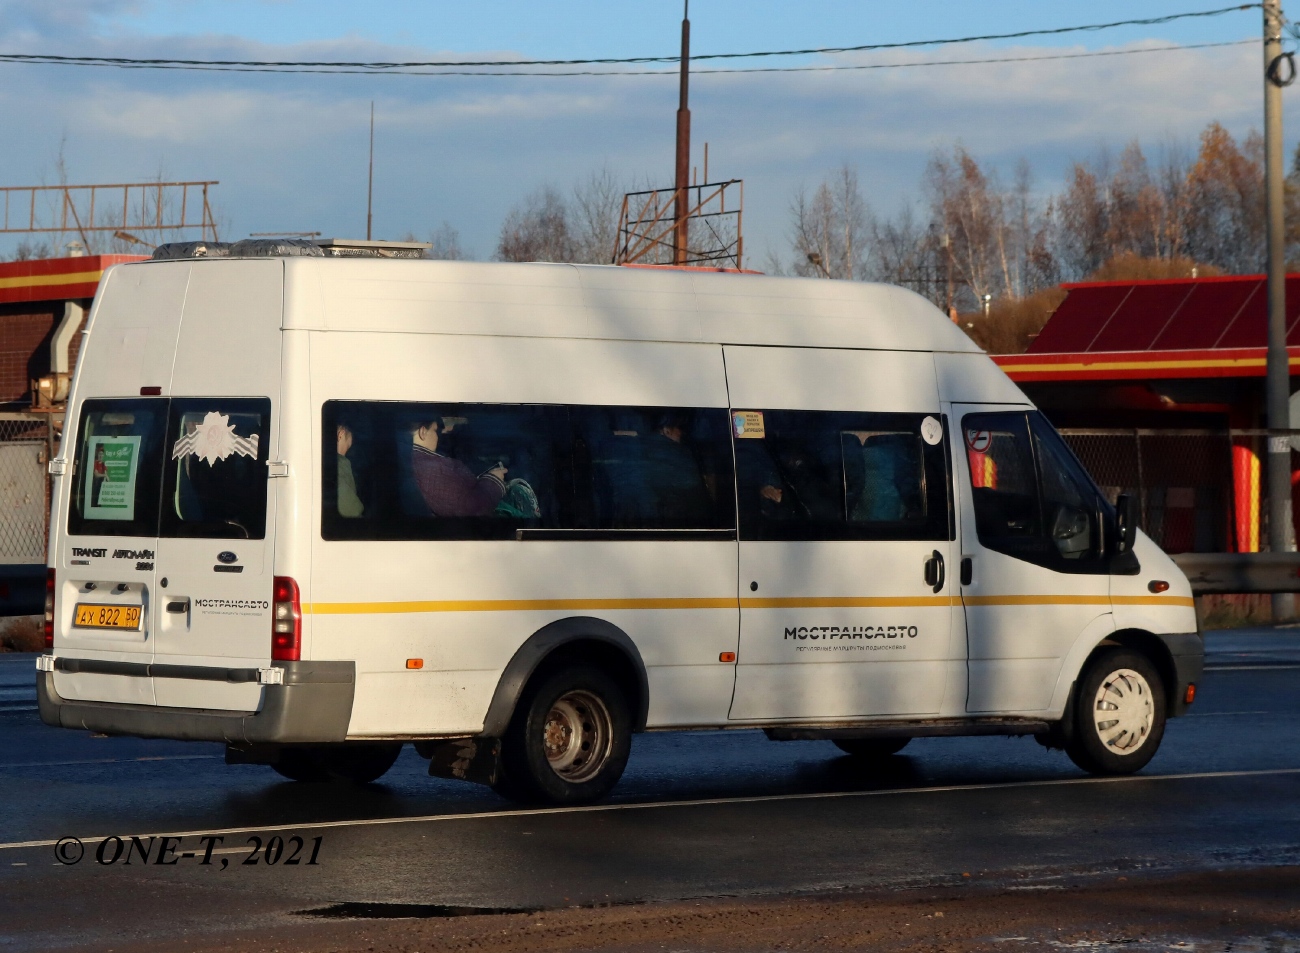 Moscow region, Samotlor-NN-3236 (Ford Transit) # АХ 822 50